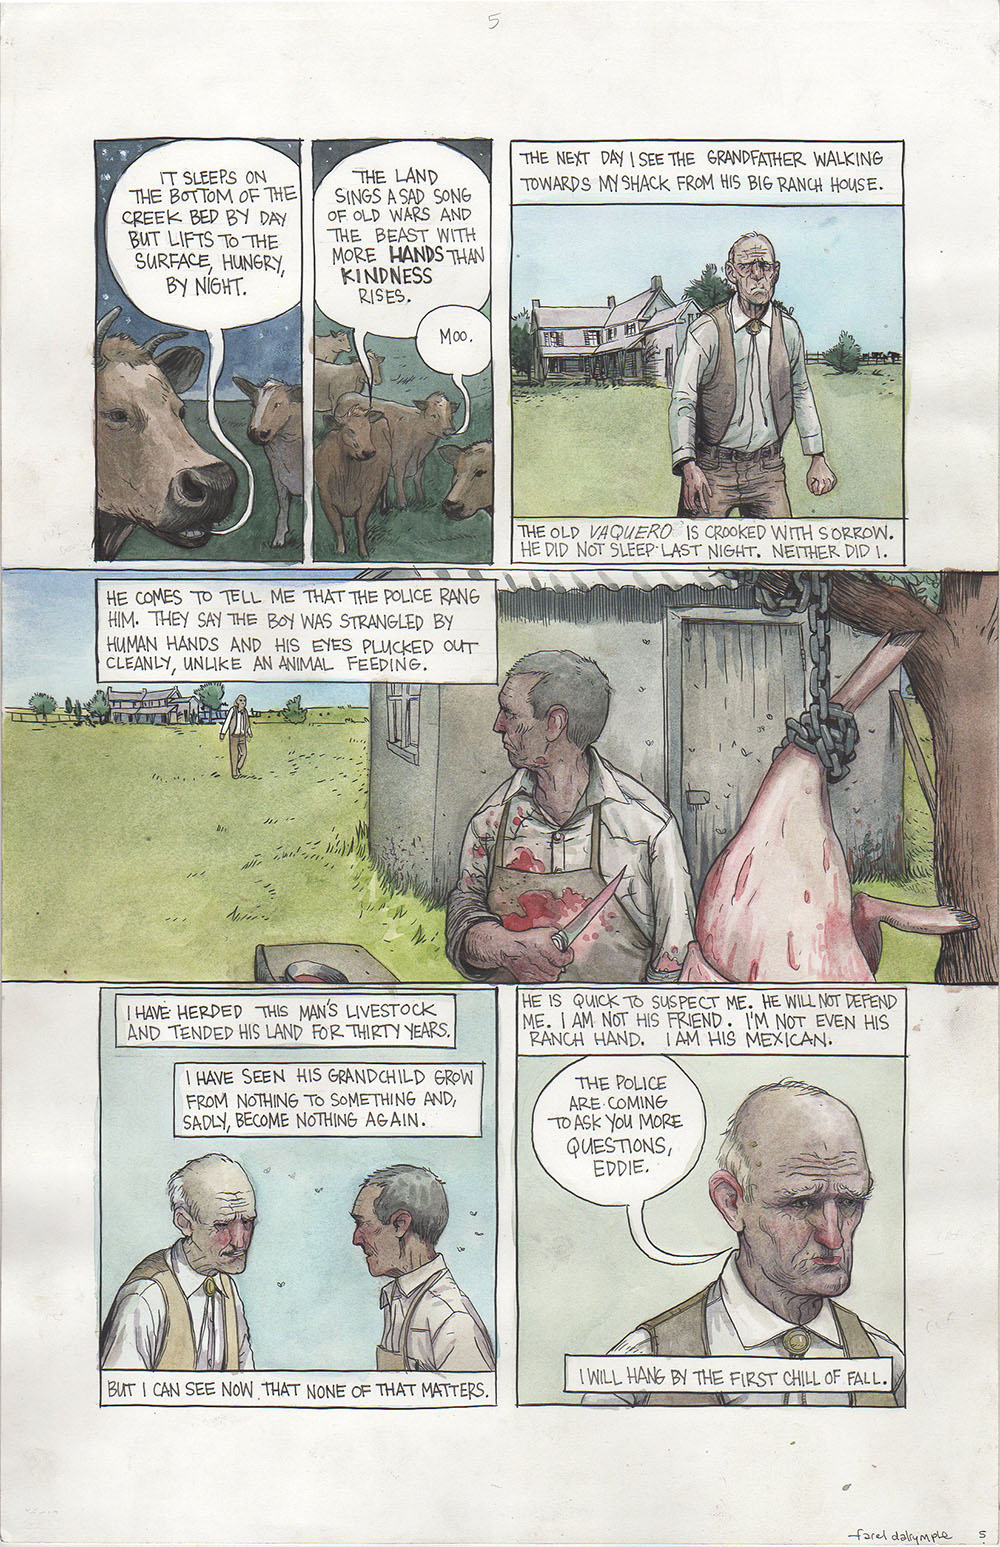 The Unexpected (Vertigo) - "The Land" - page 68